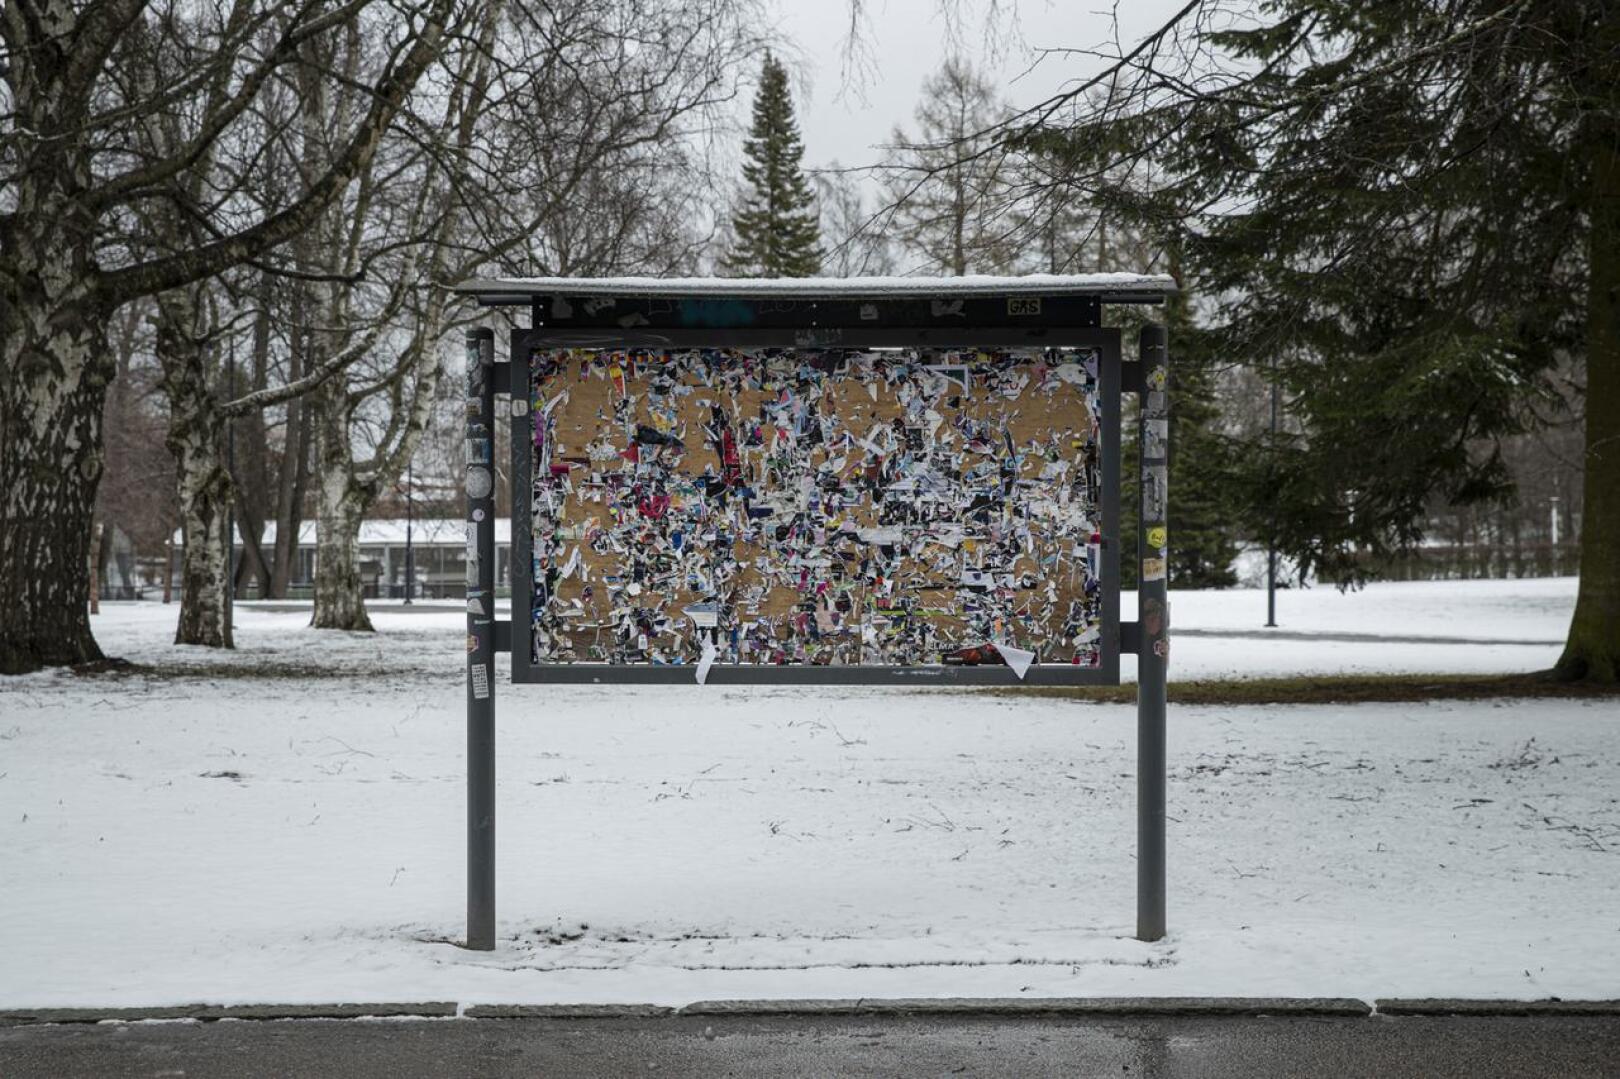 Koronakriisi pisti tapahtumille lopun maaliskuun puolivälissä. 15. huhtikuuta otetussa kuvassa näkyy, kuinka Tampereen Sorsapuiston ilmoitustaulu oli tyhjennetty tapahtumajulisteista.